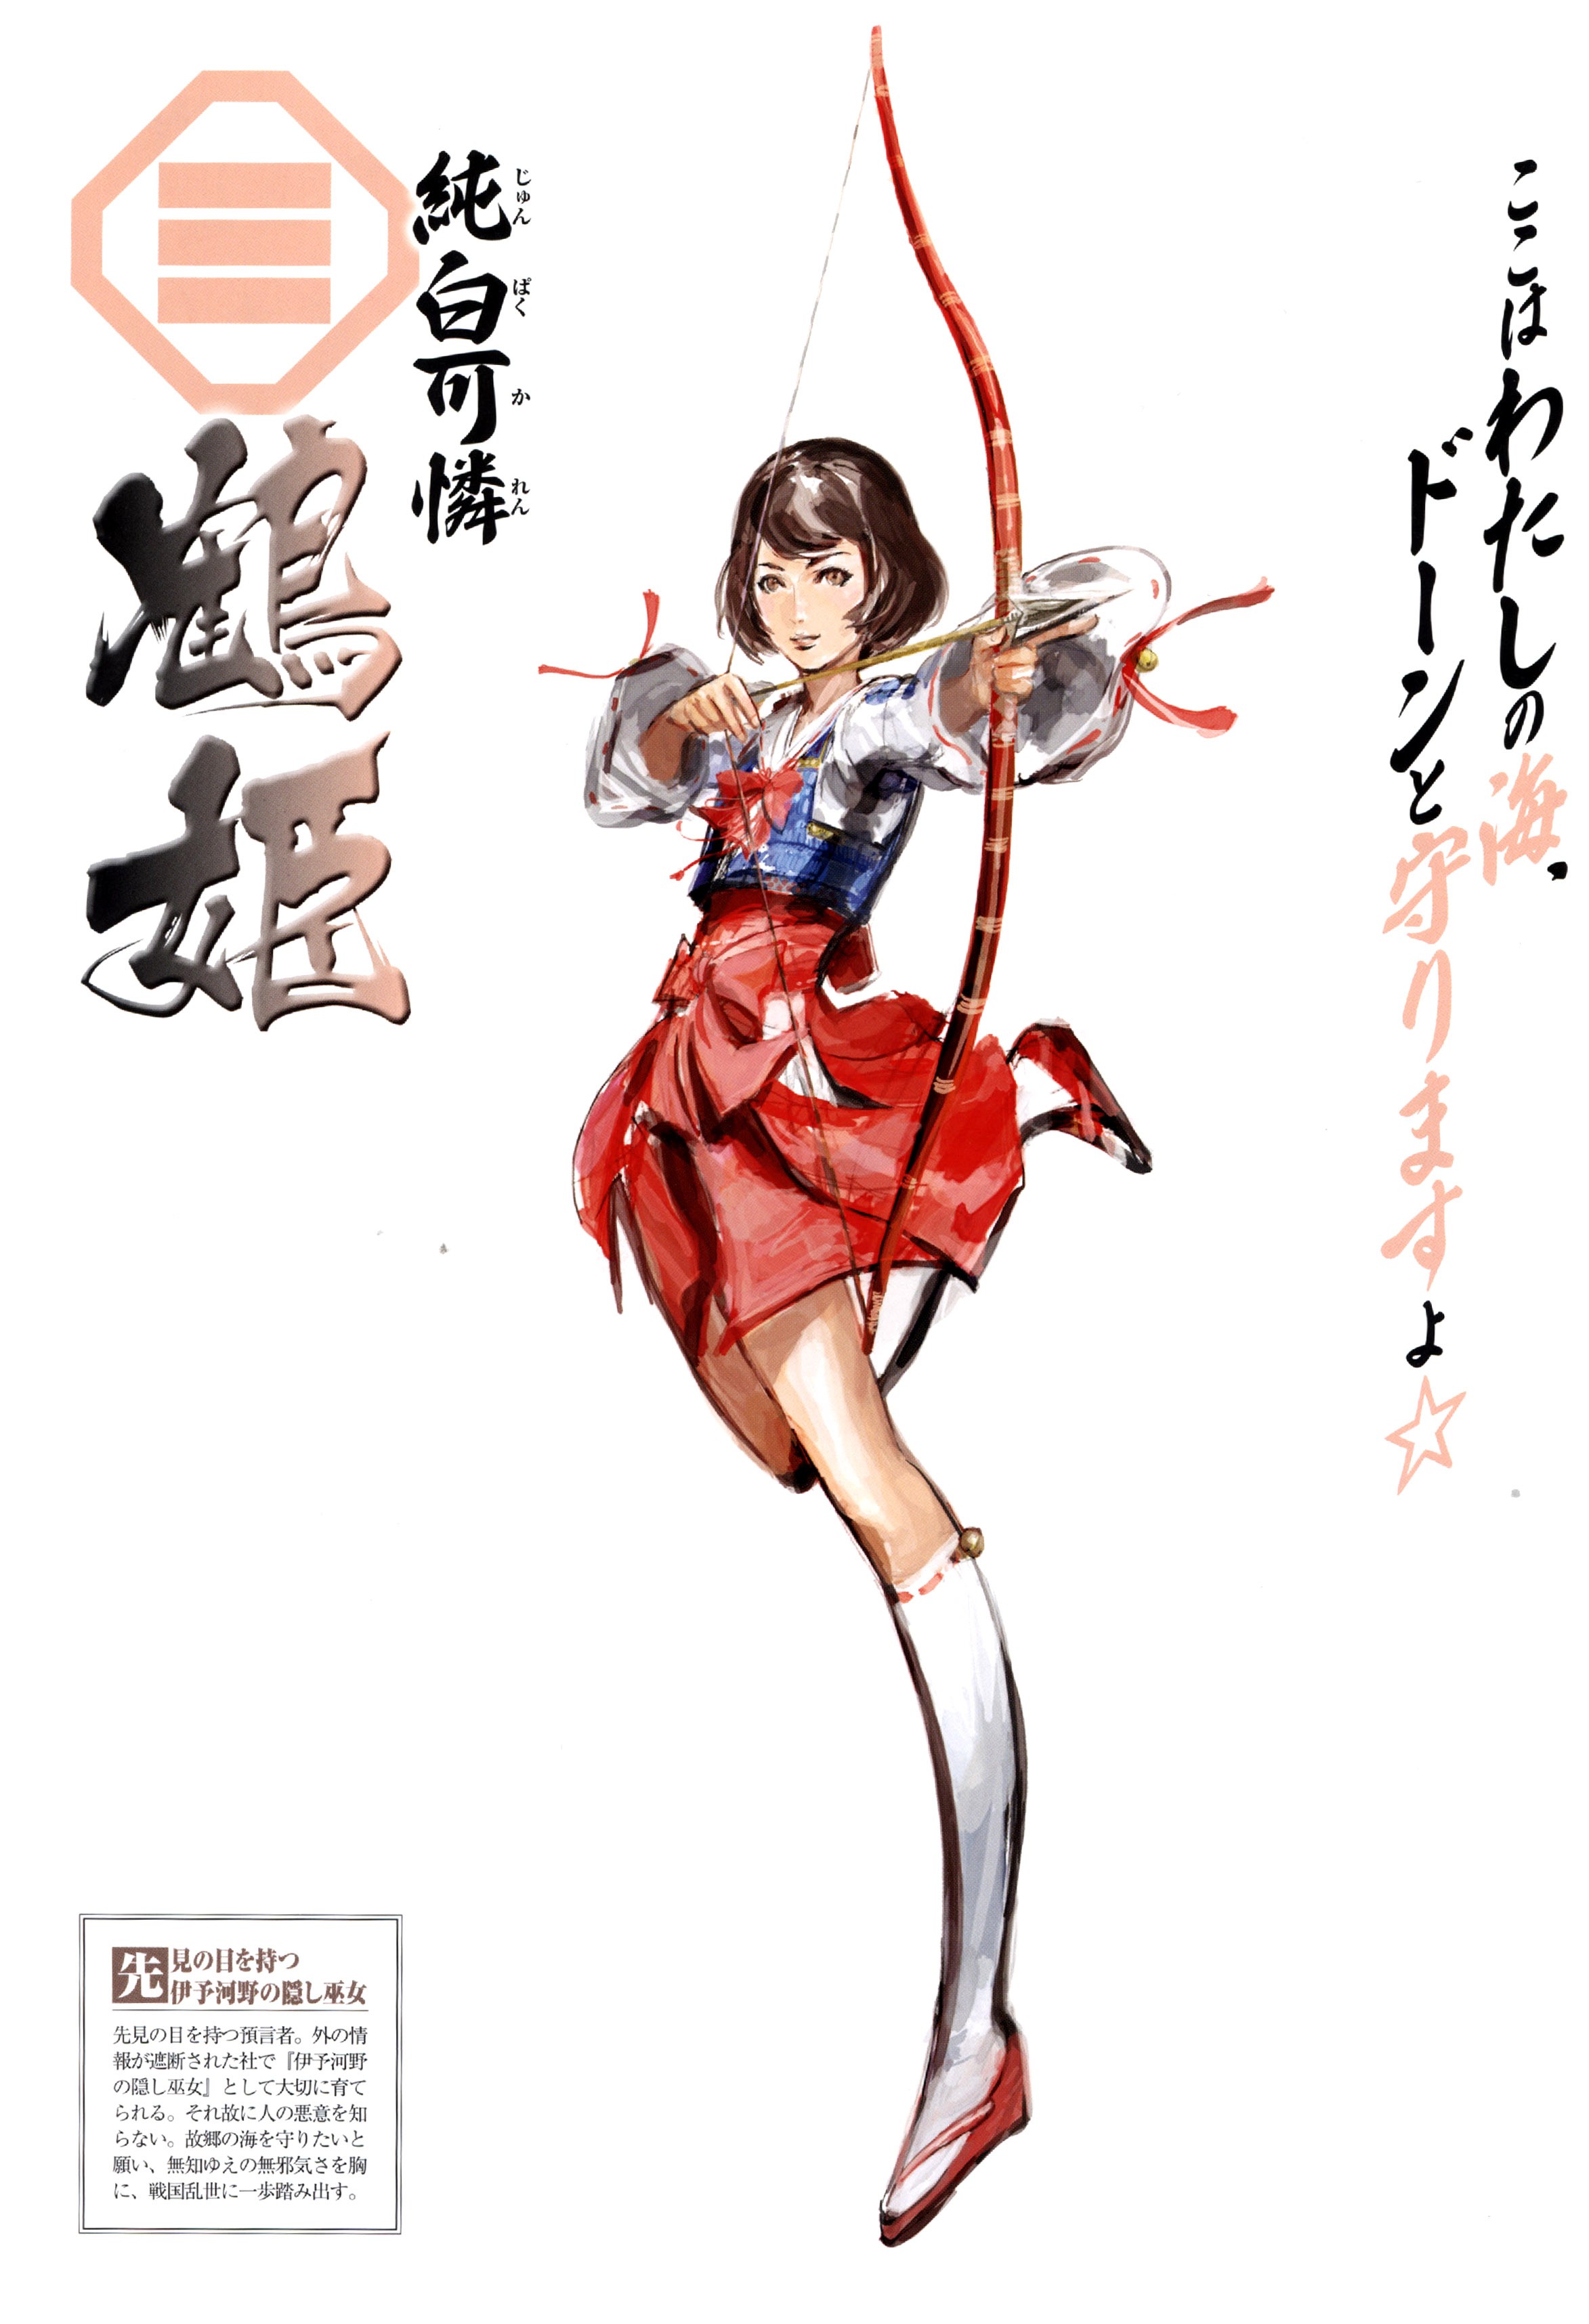 Anime 2346x3432 anime Sengoku Basara arrows bow anime girls